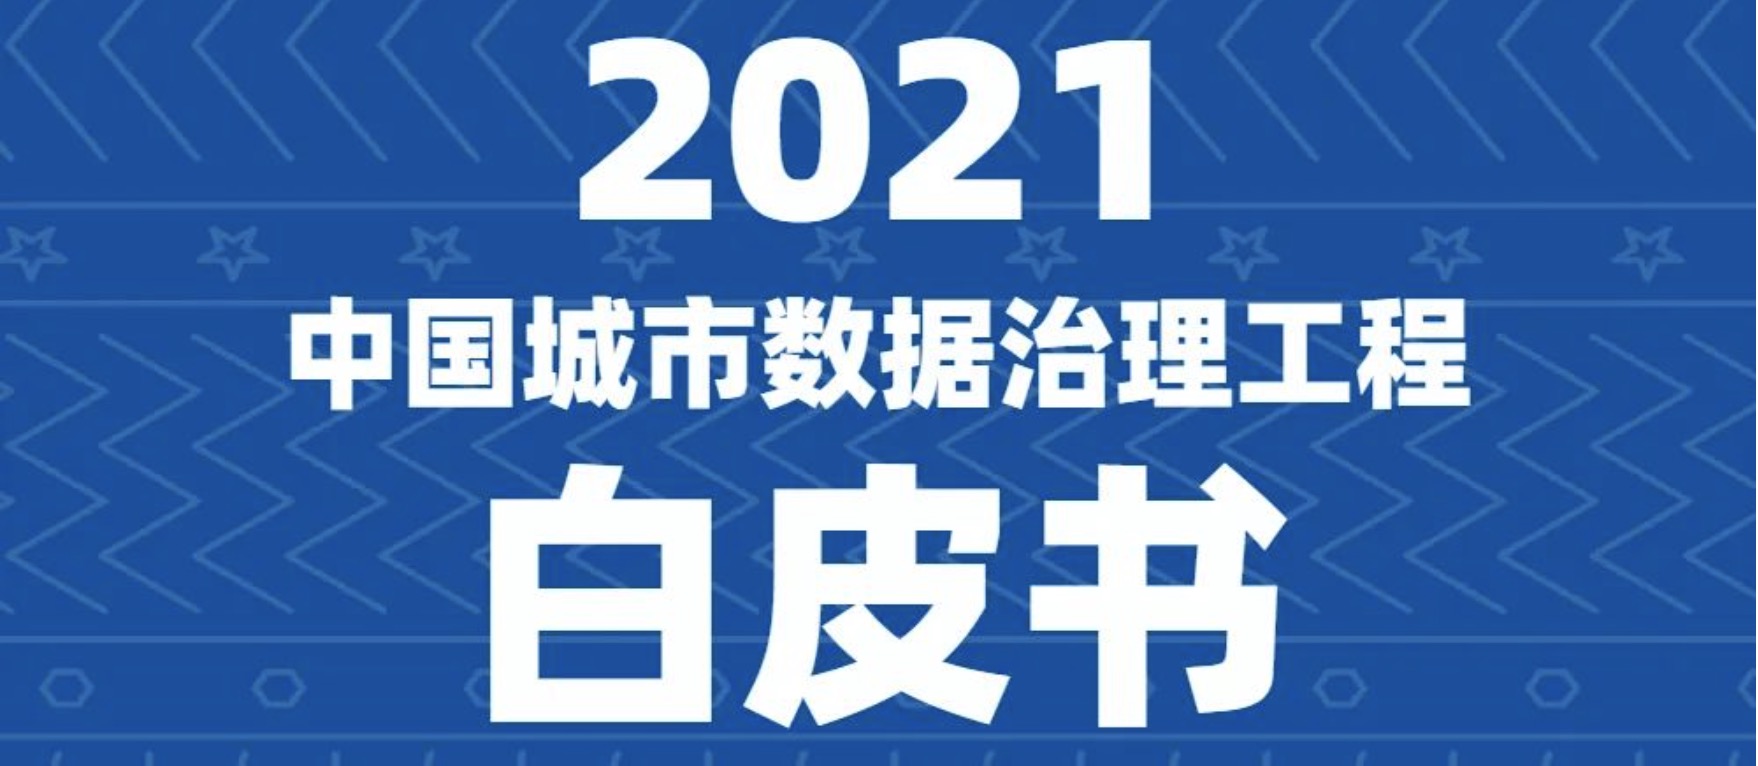 一图看懂《2021中国城市数据治理工程白皮书》